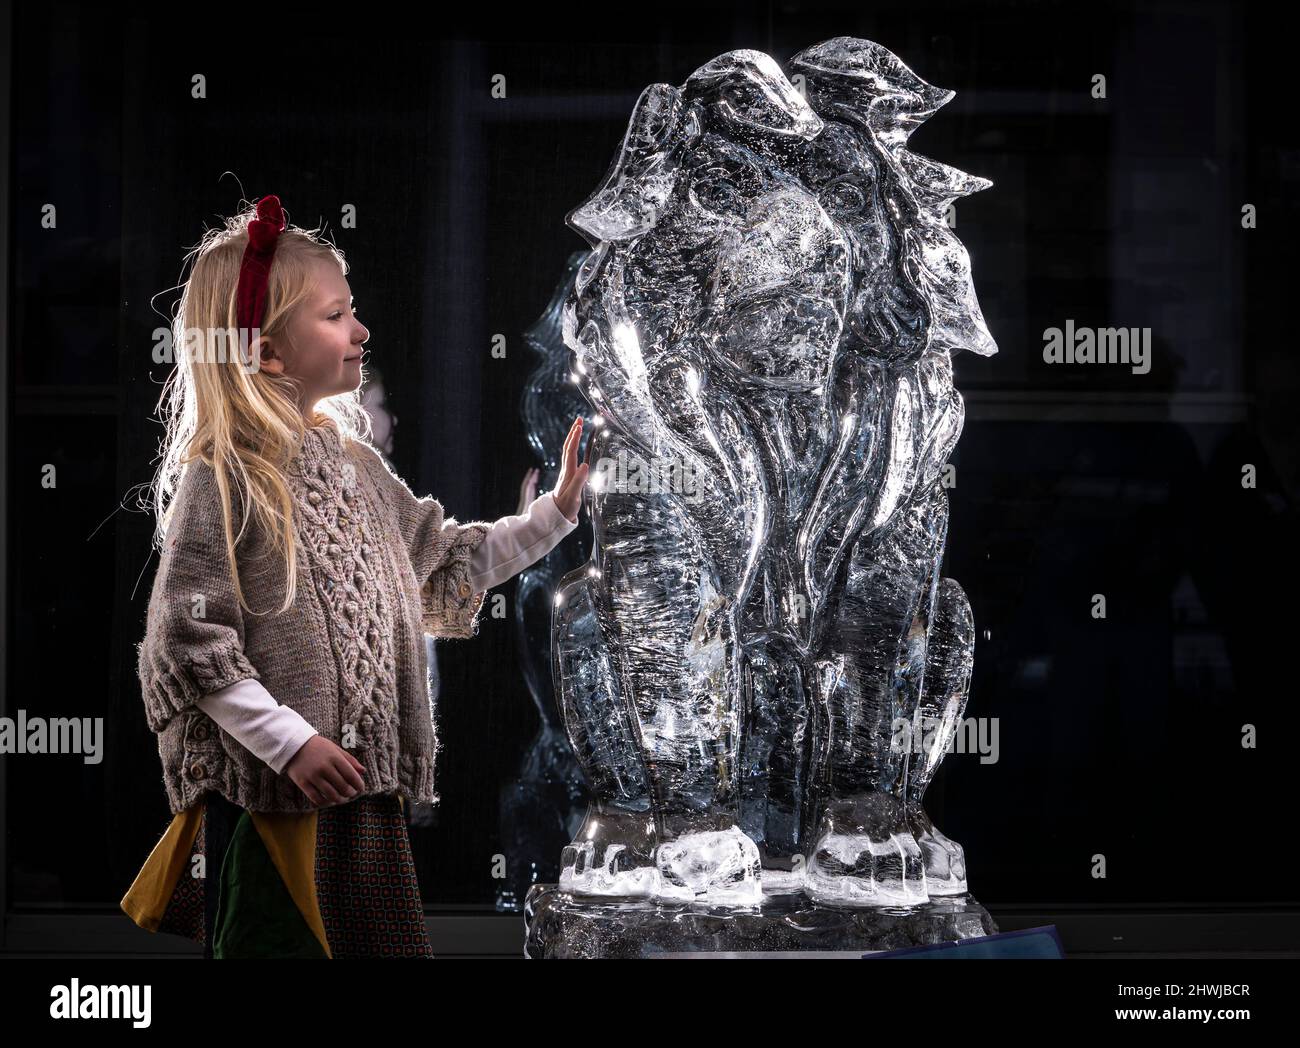 Jeanie, 4 ans (aucun nom de famille), voit une sculpture sur glace d'un lion qui fait partie de la piste de glace de York dans le centre-ville de York, qui comprend plus de 40 sculptures de glace solide. Date de la photo: Dimanche 6 mars 2022. Banque D'Images